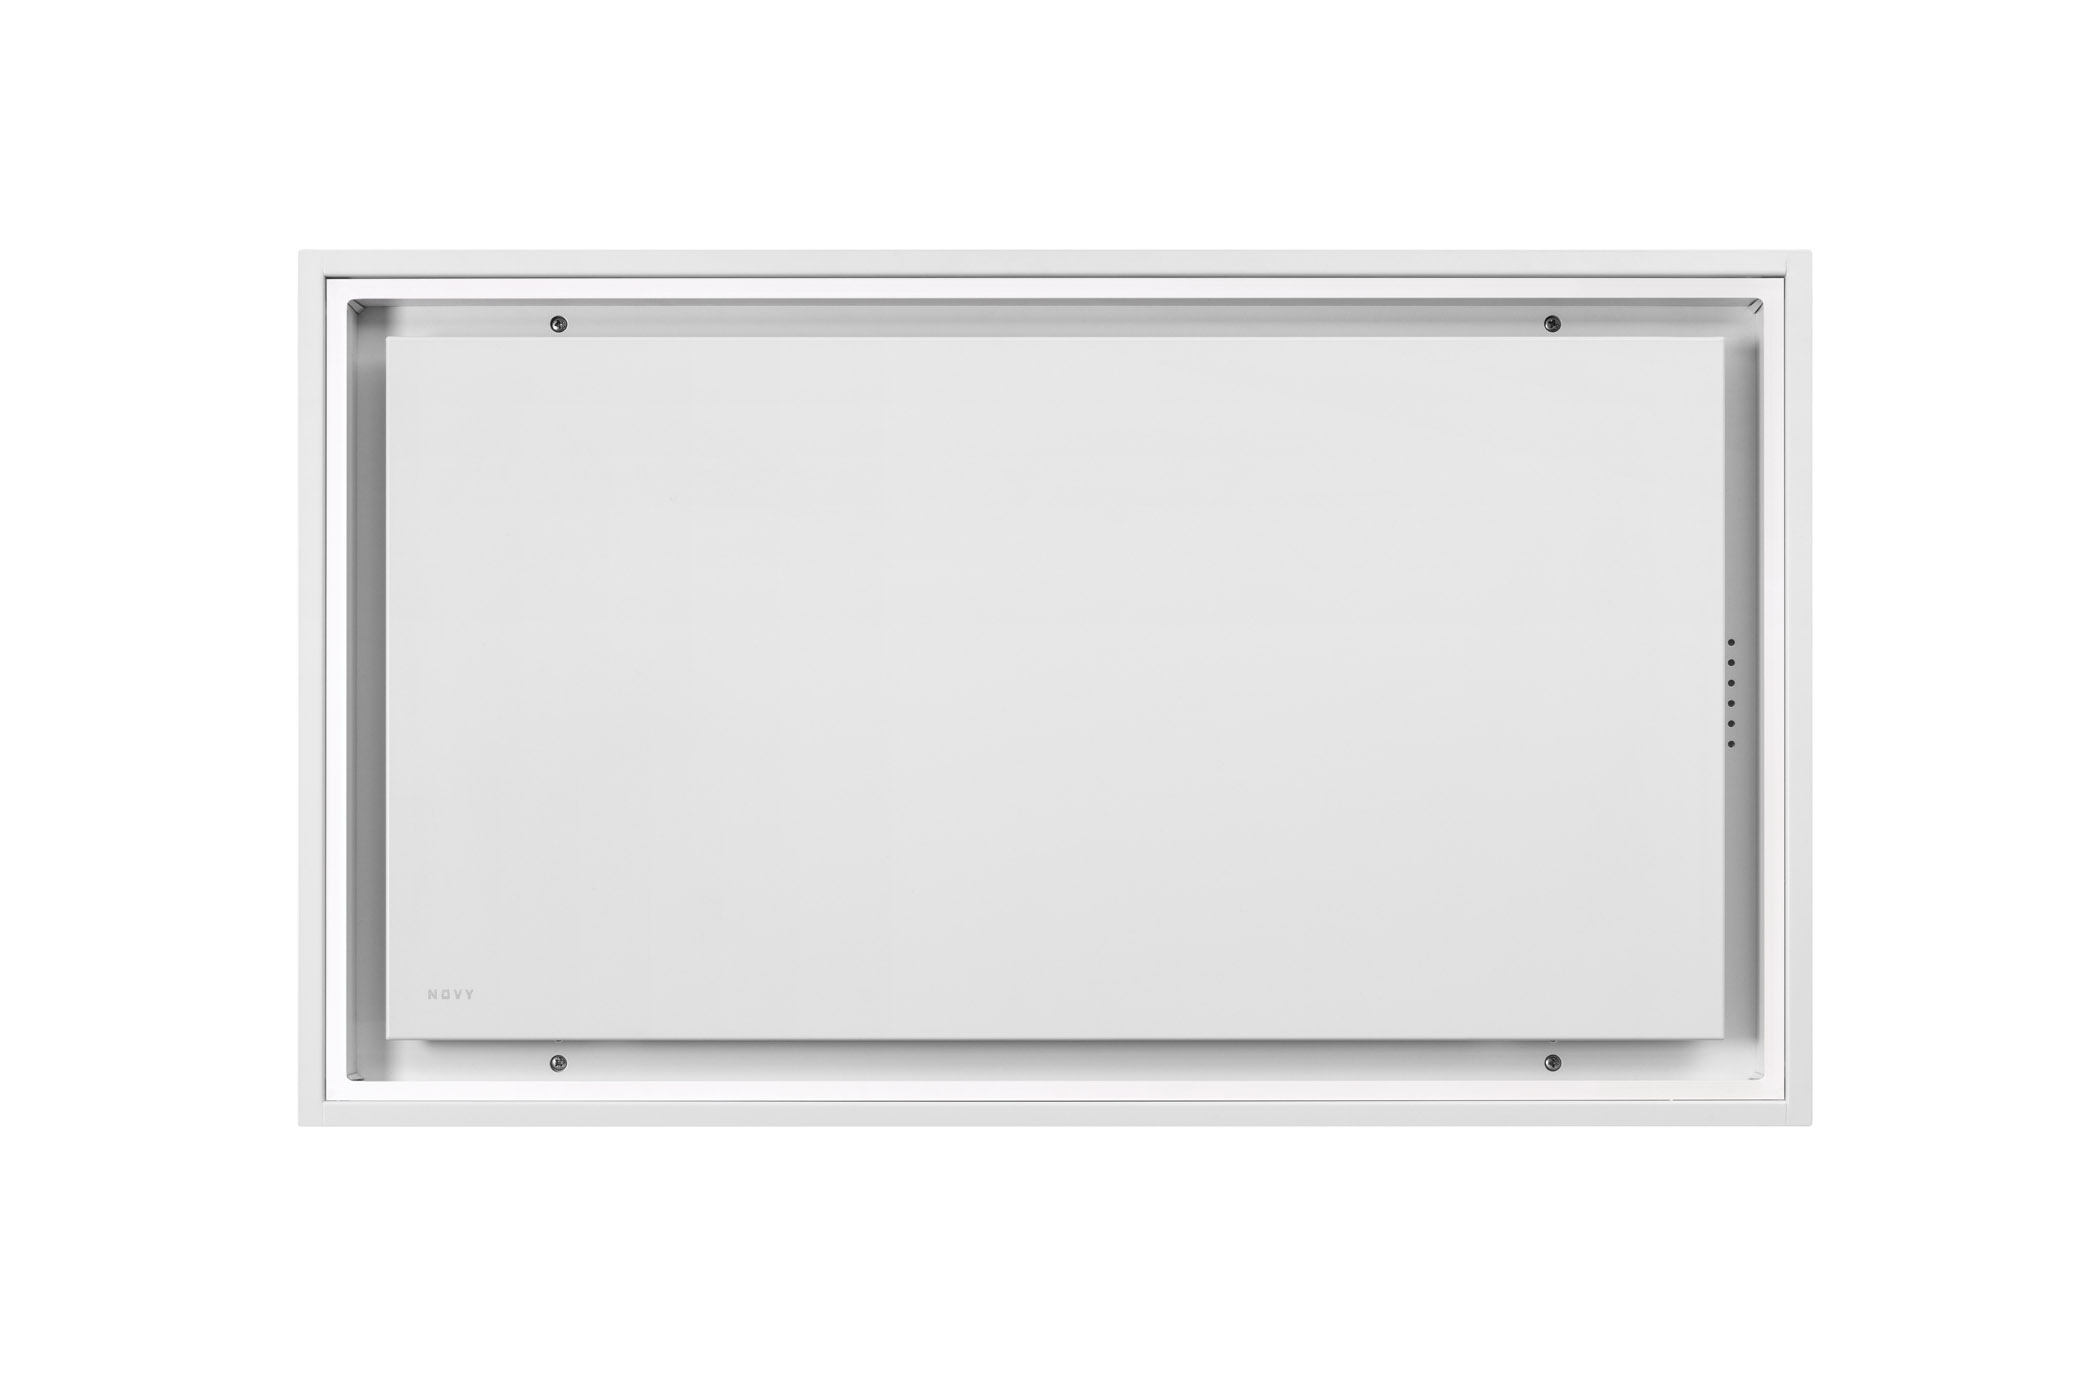 6911 Ceiling unit Pureline Pro Compact  White 